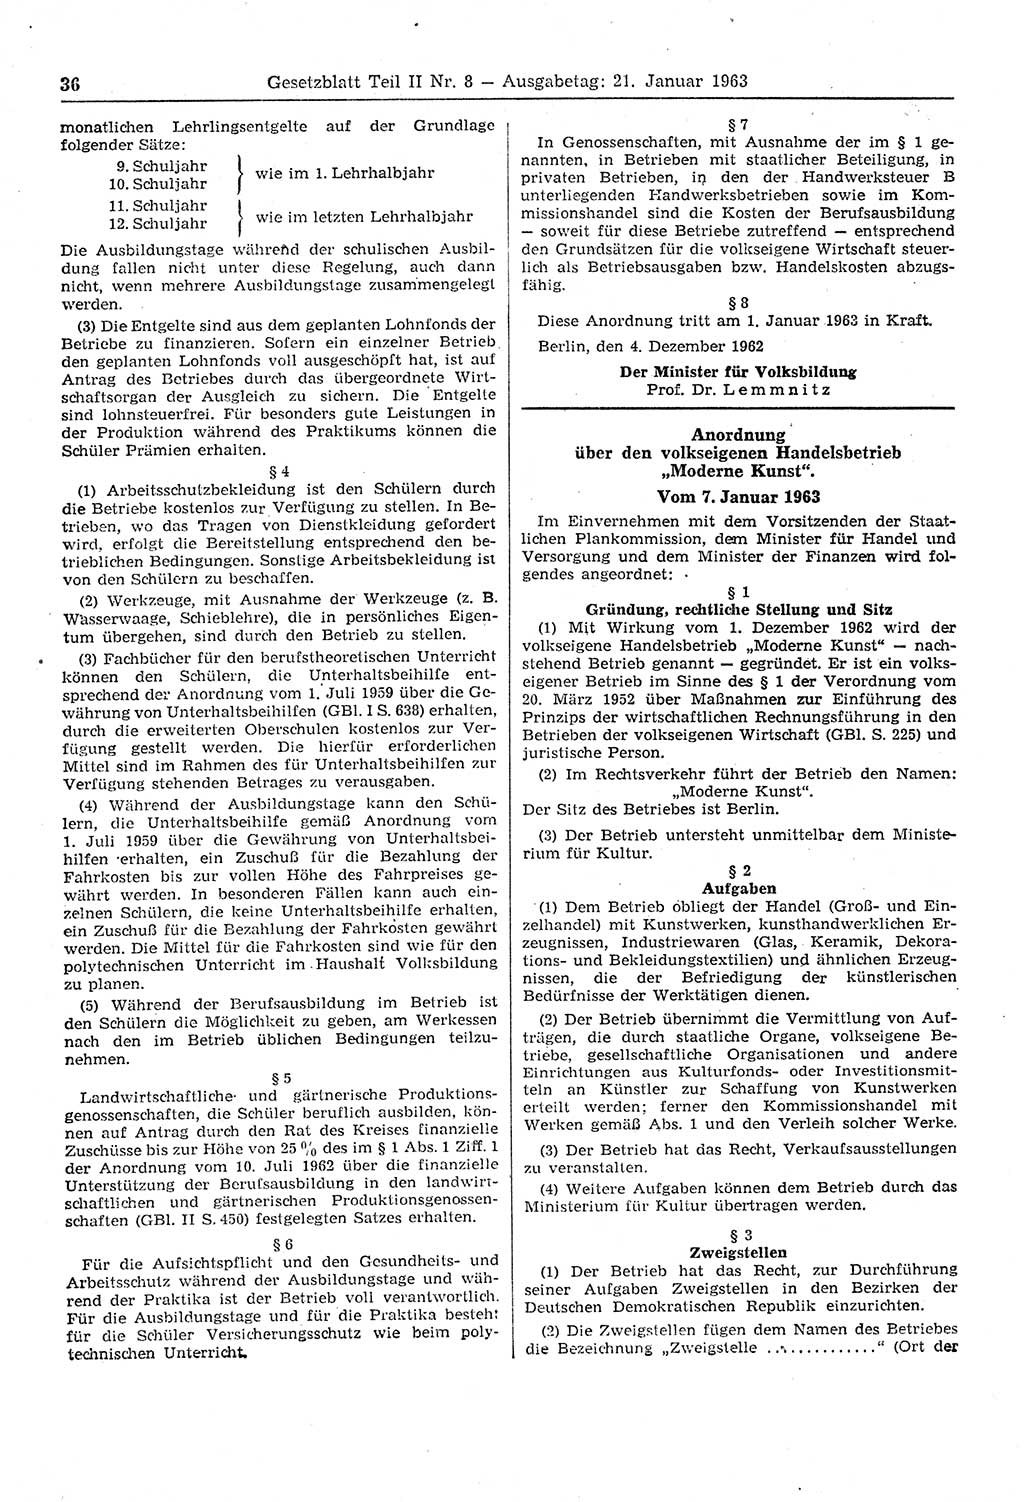 Gesetzblatt (GBl.) der Deutschen Demokratischen Republik (DDR) Teil ⅠⅠ 1963, Seite 36 (GBl. DDR ⅠⅠ 1963, S. 36)